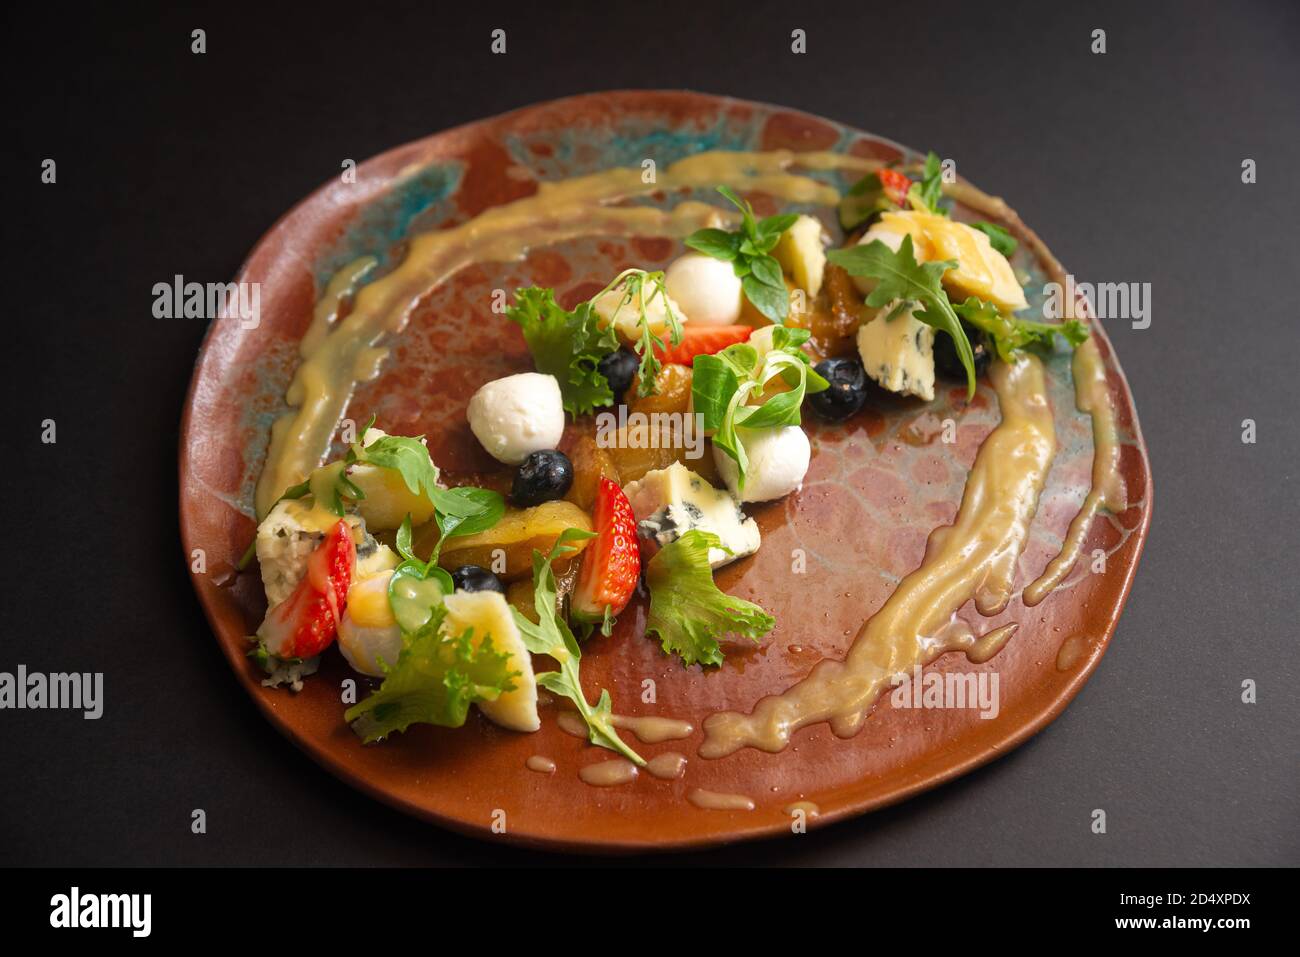 Salade de fromage et de fruits sur une assiette faite à la main. Mozzarella, fromage bleu, parmesan, rouleaux de courgettes, micro verts, bleuets, quartiers de fraises Banque D'Images